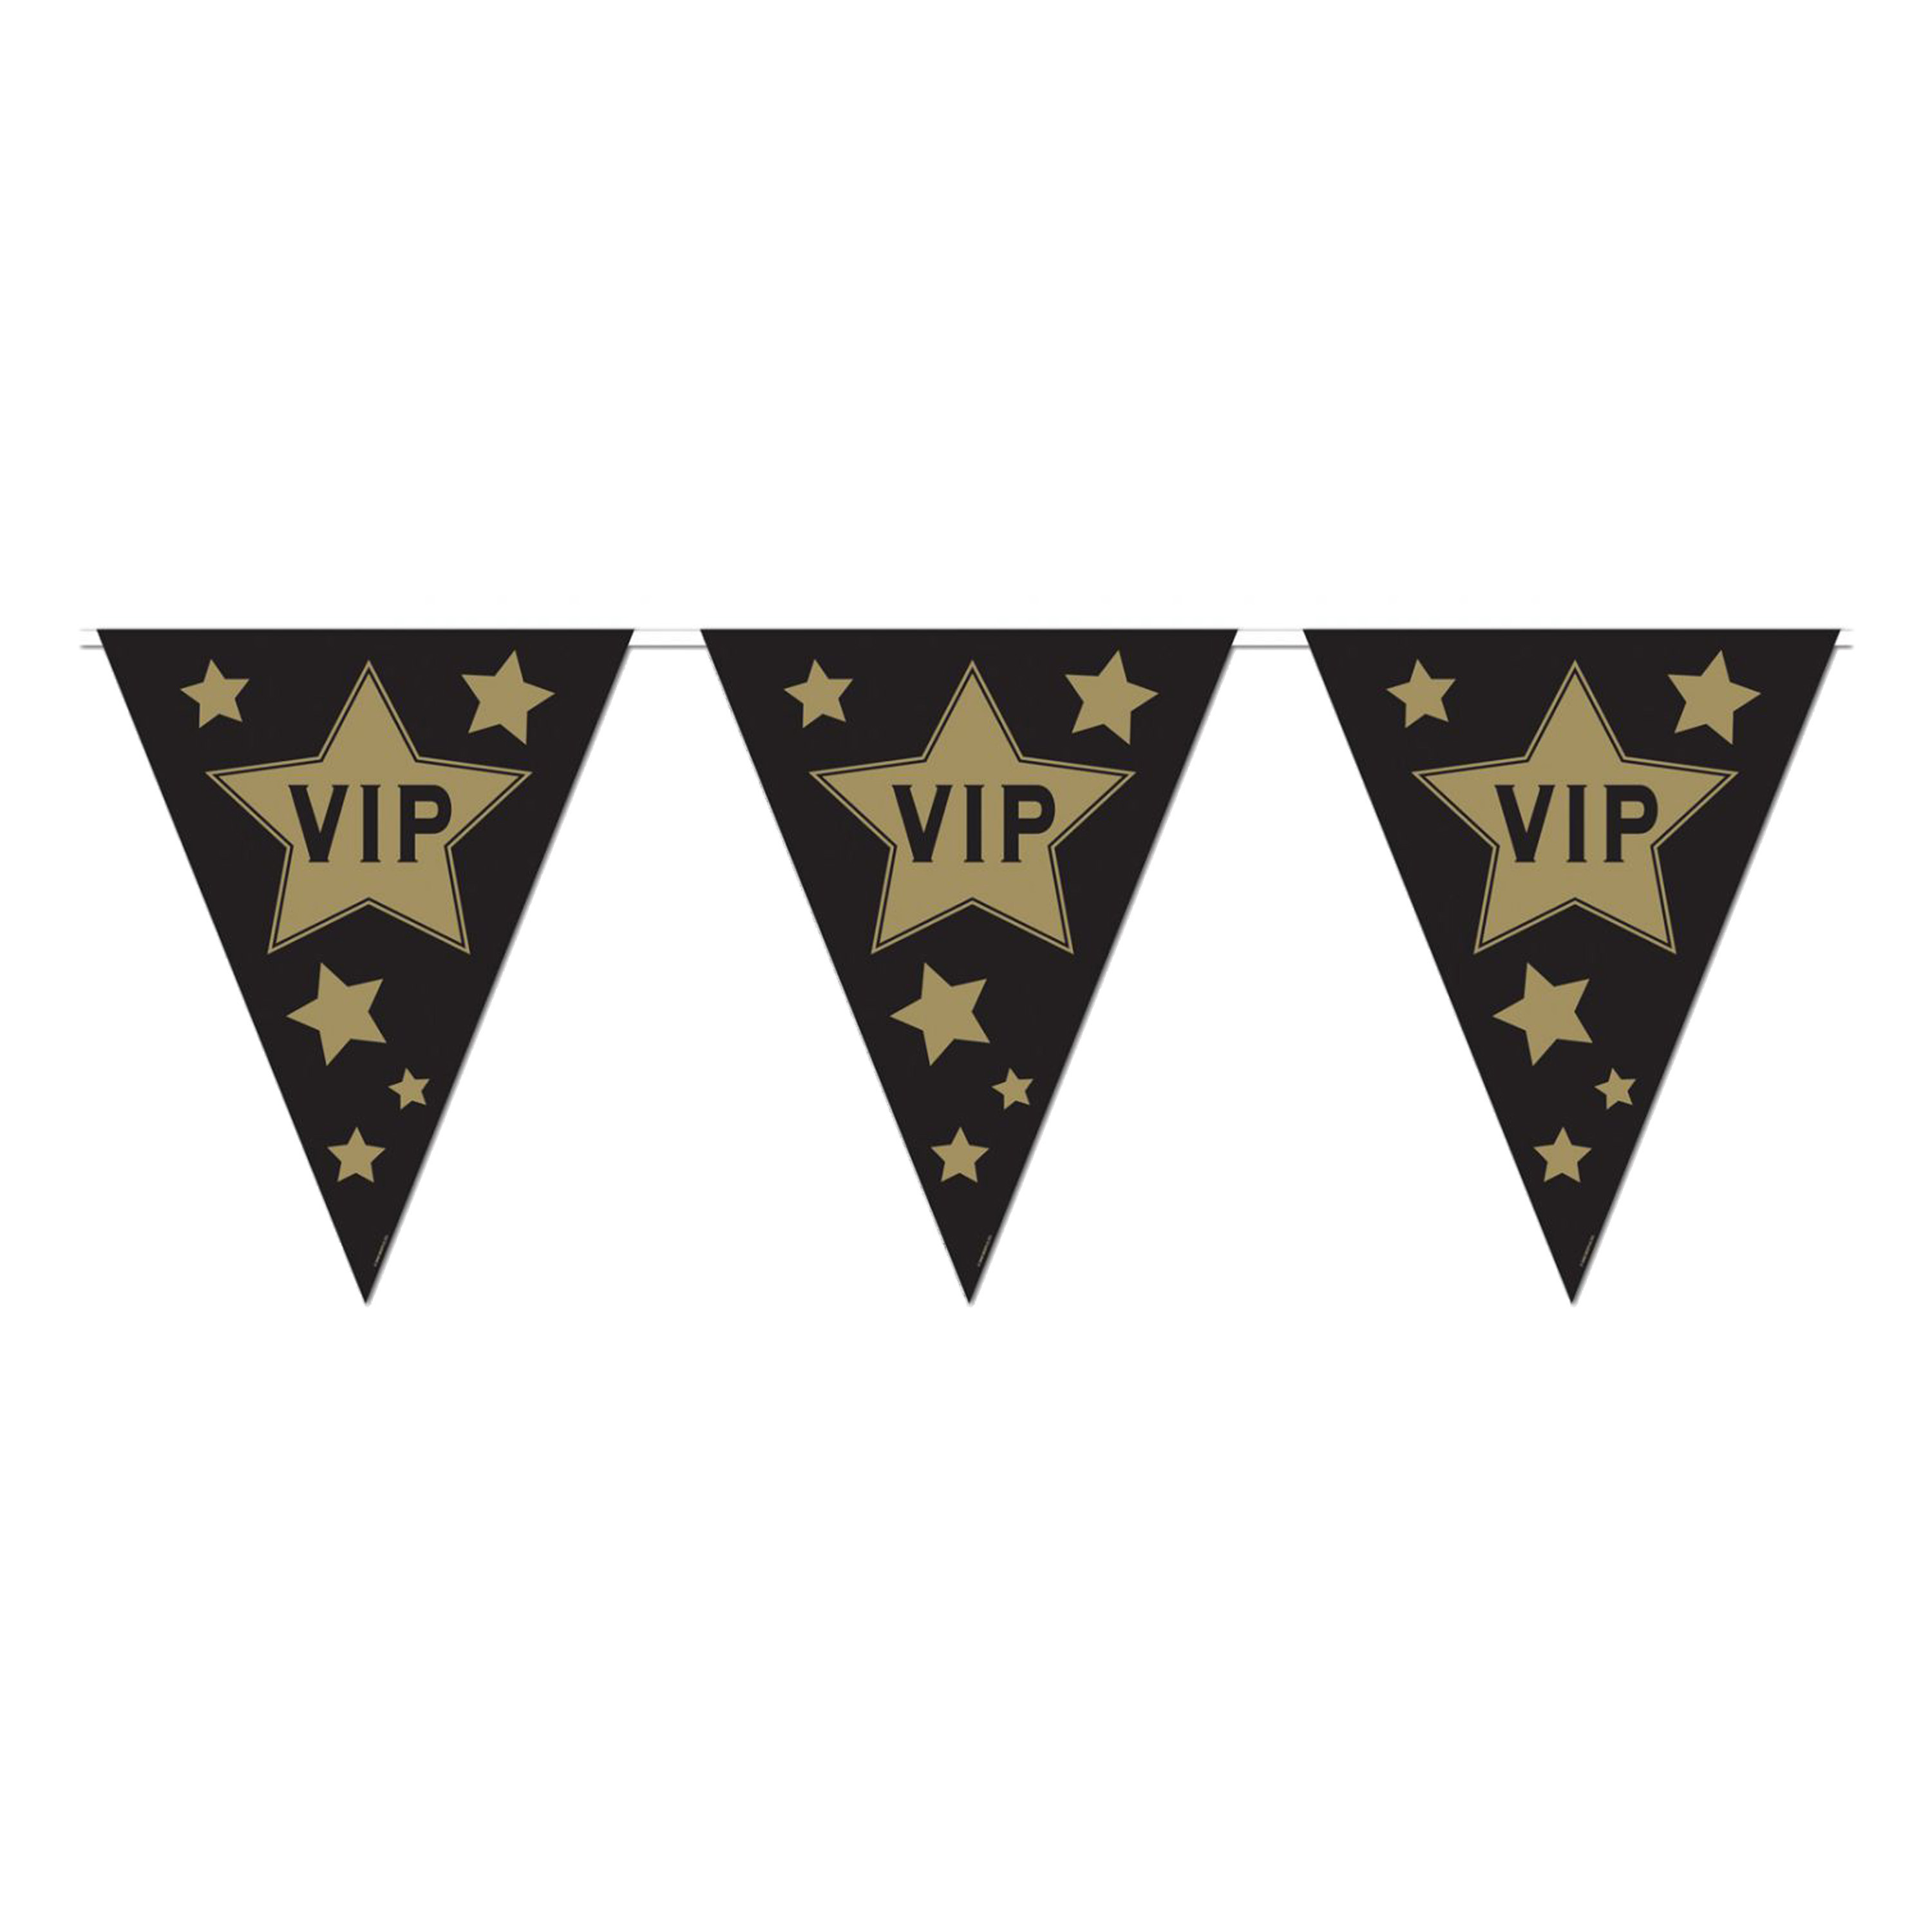 VIP feestslinger-vlaggenlijn 360 x 30 cm zwart-goud van papier